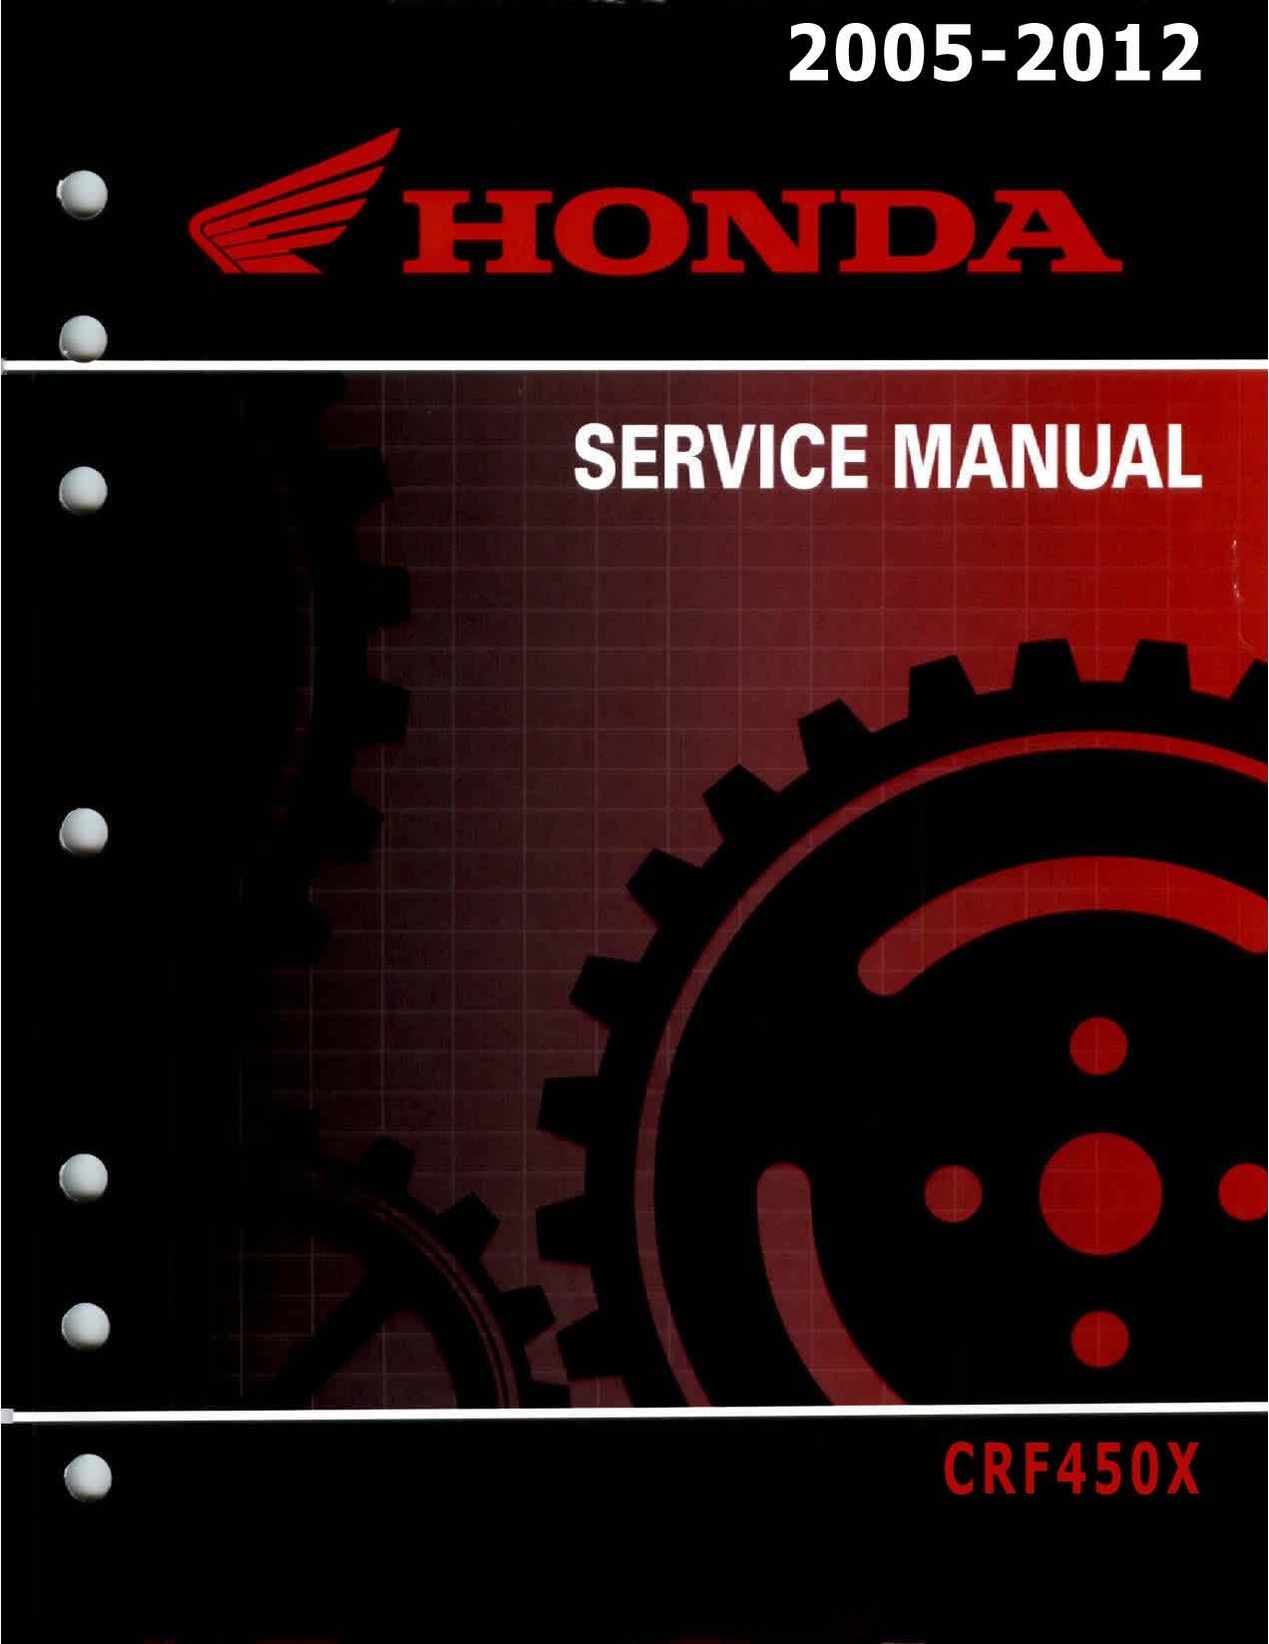 File:Honda CRF450X 2005-2012 Service Manual Repair.pdf